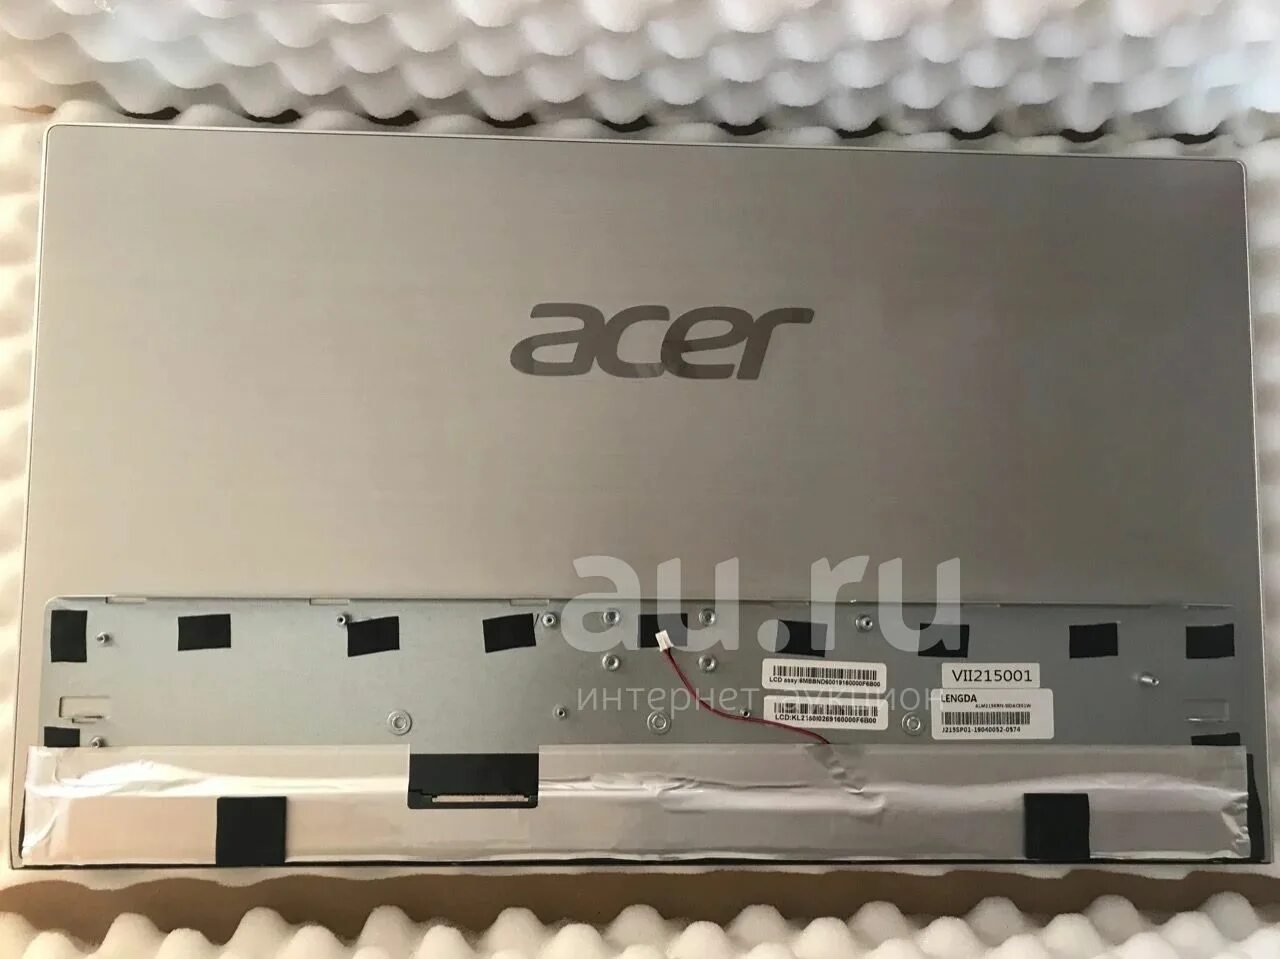 Acer c24 1800. Матрица для моноблока Acer Aspire c22-820. Acer Aspire c22-820. Моноблок Acer Aspire c22-820. Acer Aspire c22-820 motherboard.